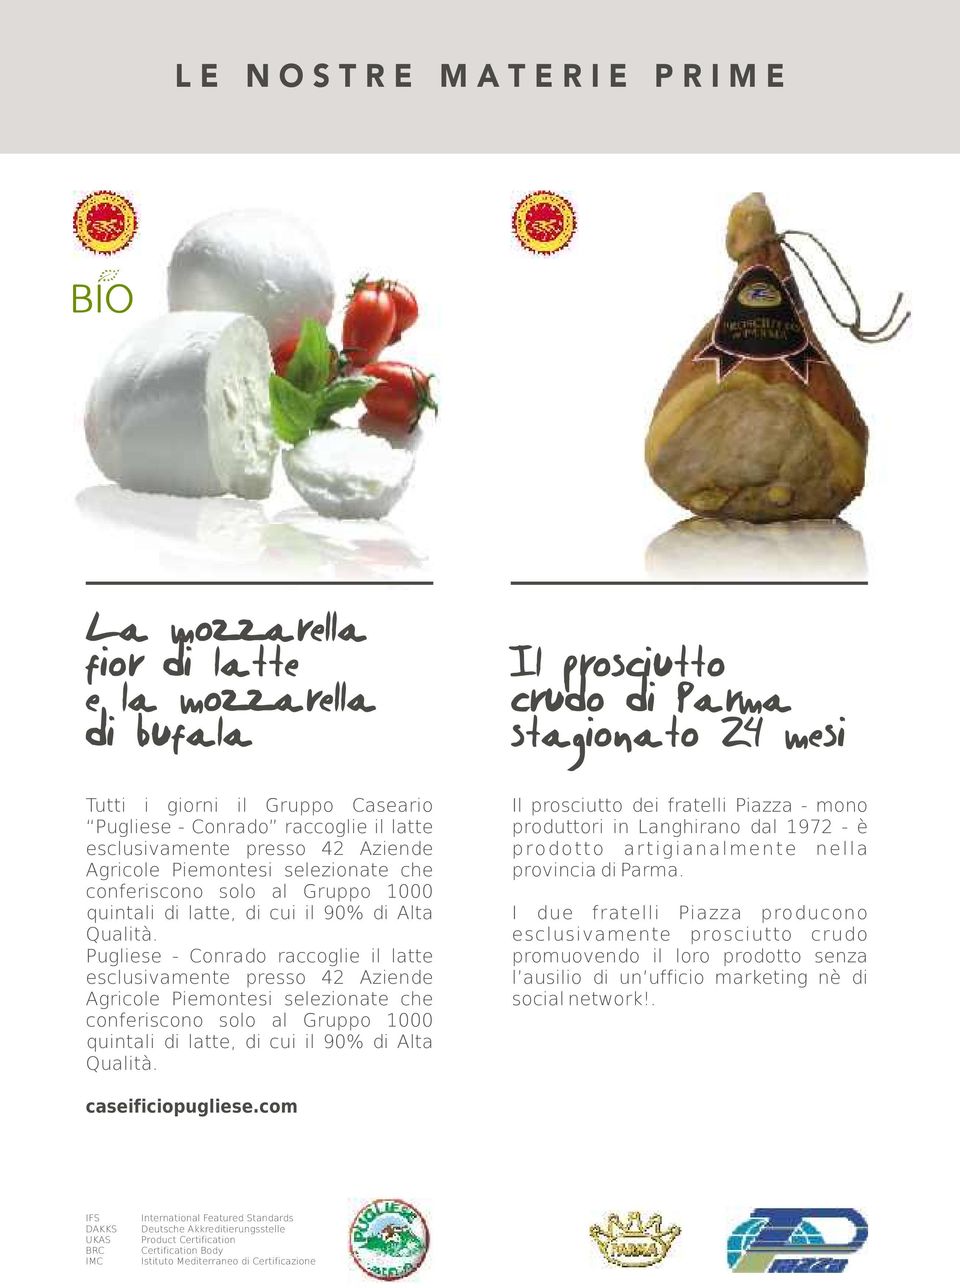 Pugliese - Conrado raccoglie il latte  Il prosciutto dei fratelli Piazza - mono produttori in Langhirano dal 1972 - è prodotto artigianalmente nella provincia di Parma.